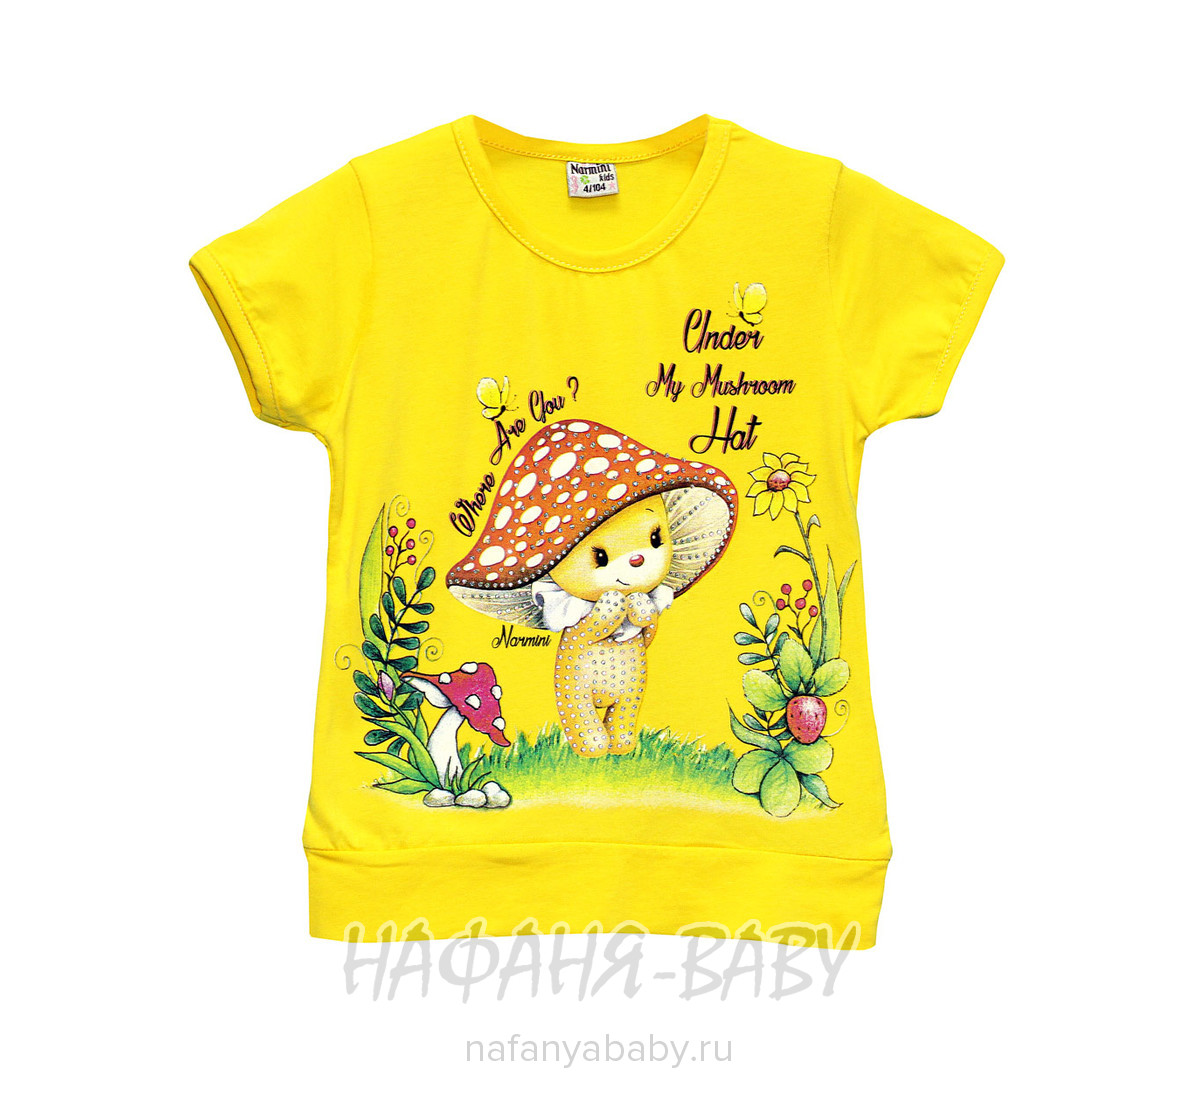 Детская футболка NARMINI арт: 5509, 1-4 года, цвет малиновый, оптом Турция